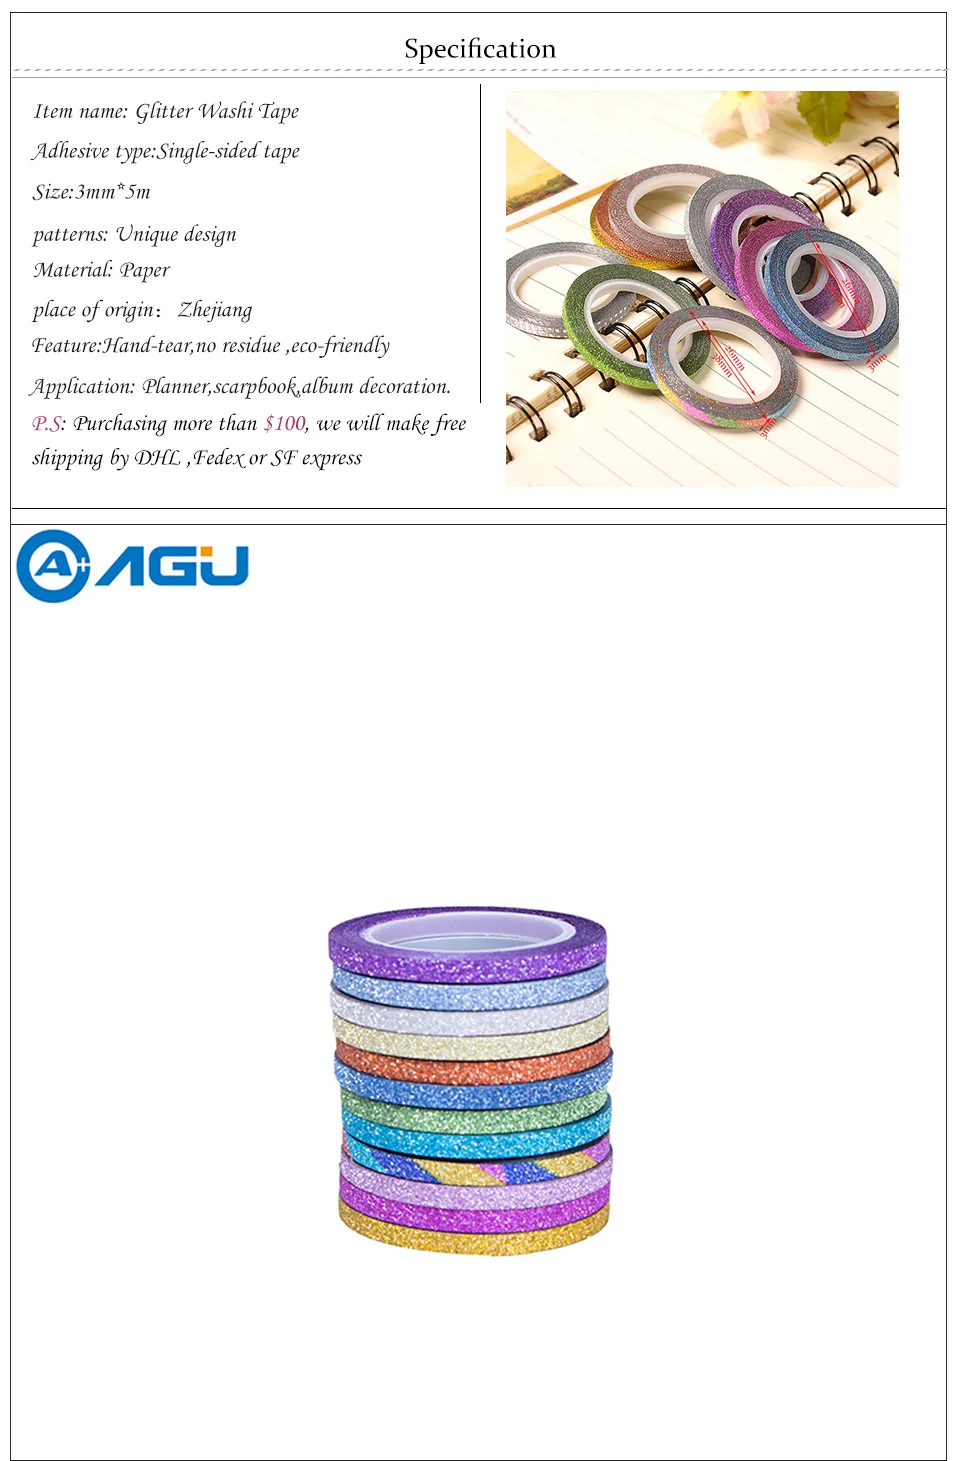 AAGU 3 мм * 5 м 12 шт./лот Тощий стационарный блеск васи клейкие ленты односторонняя клейкая бумага клейкие Ленты Декоративные DIY клейкие ленты